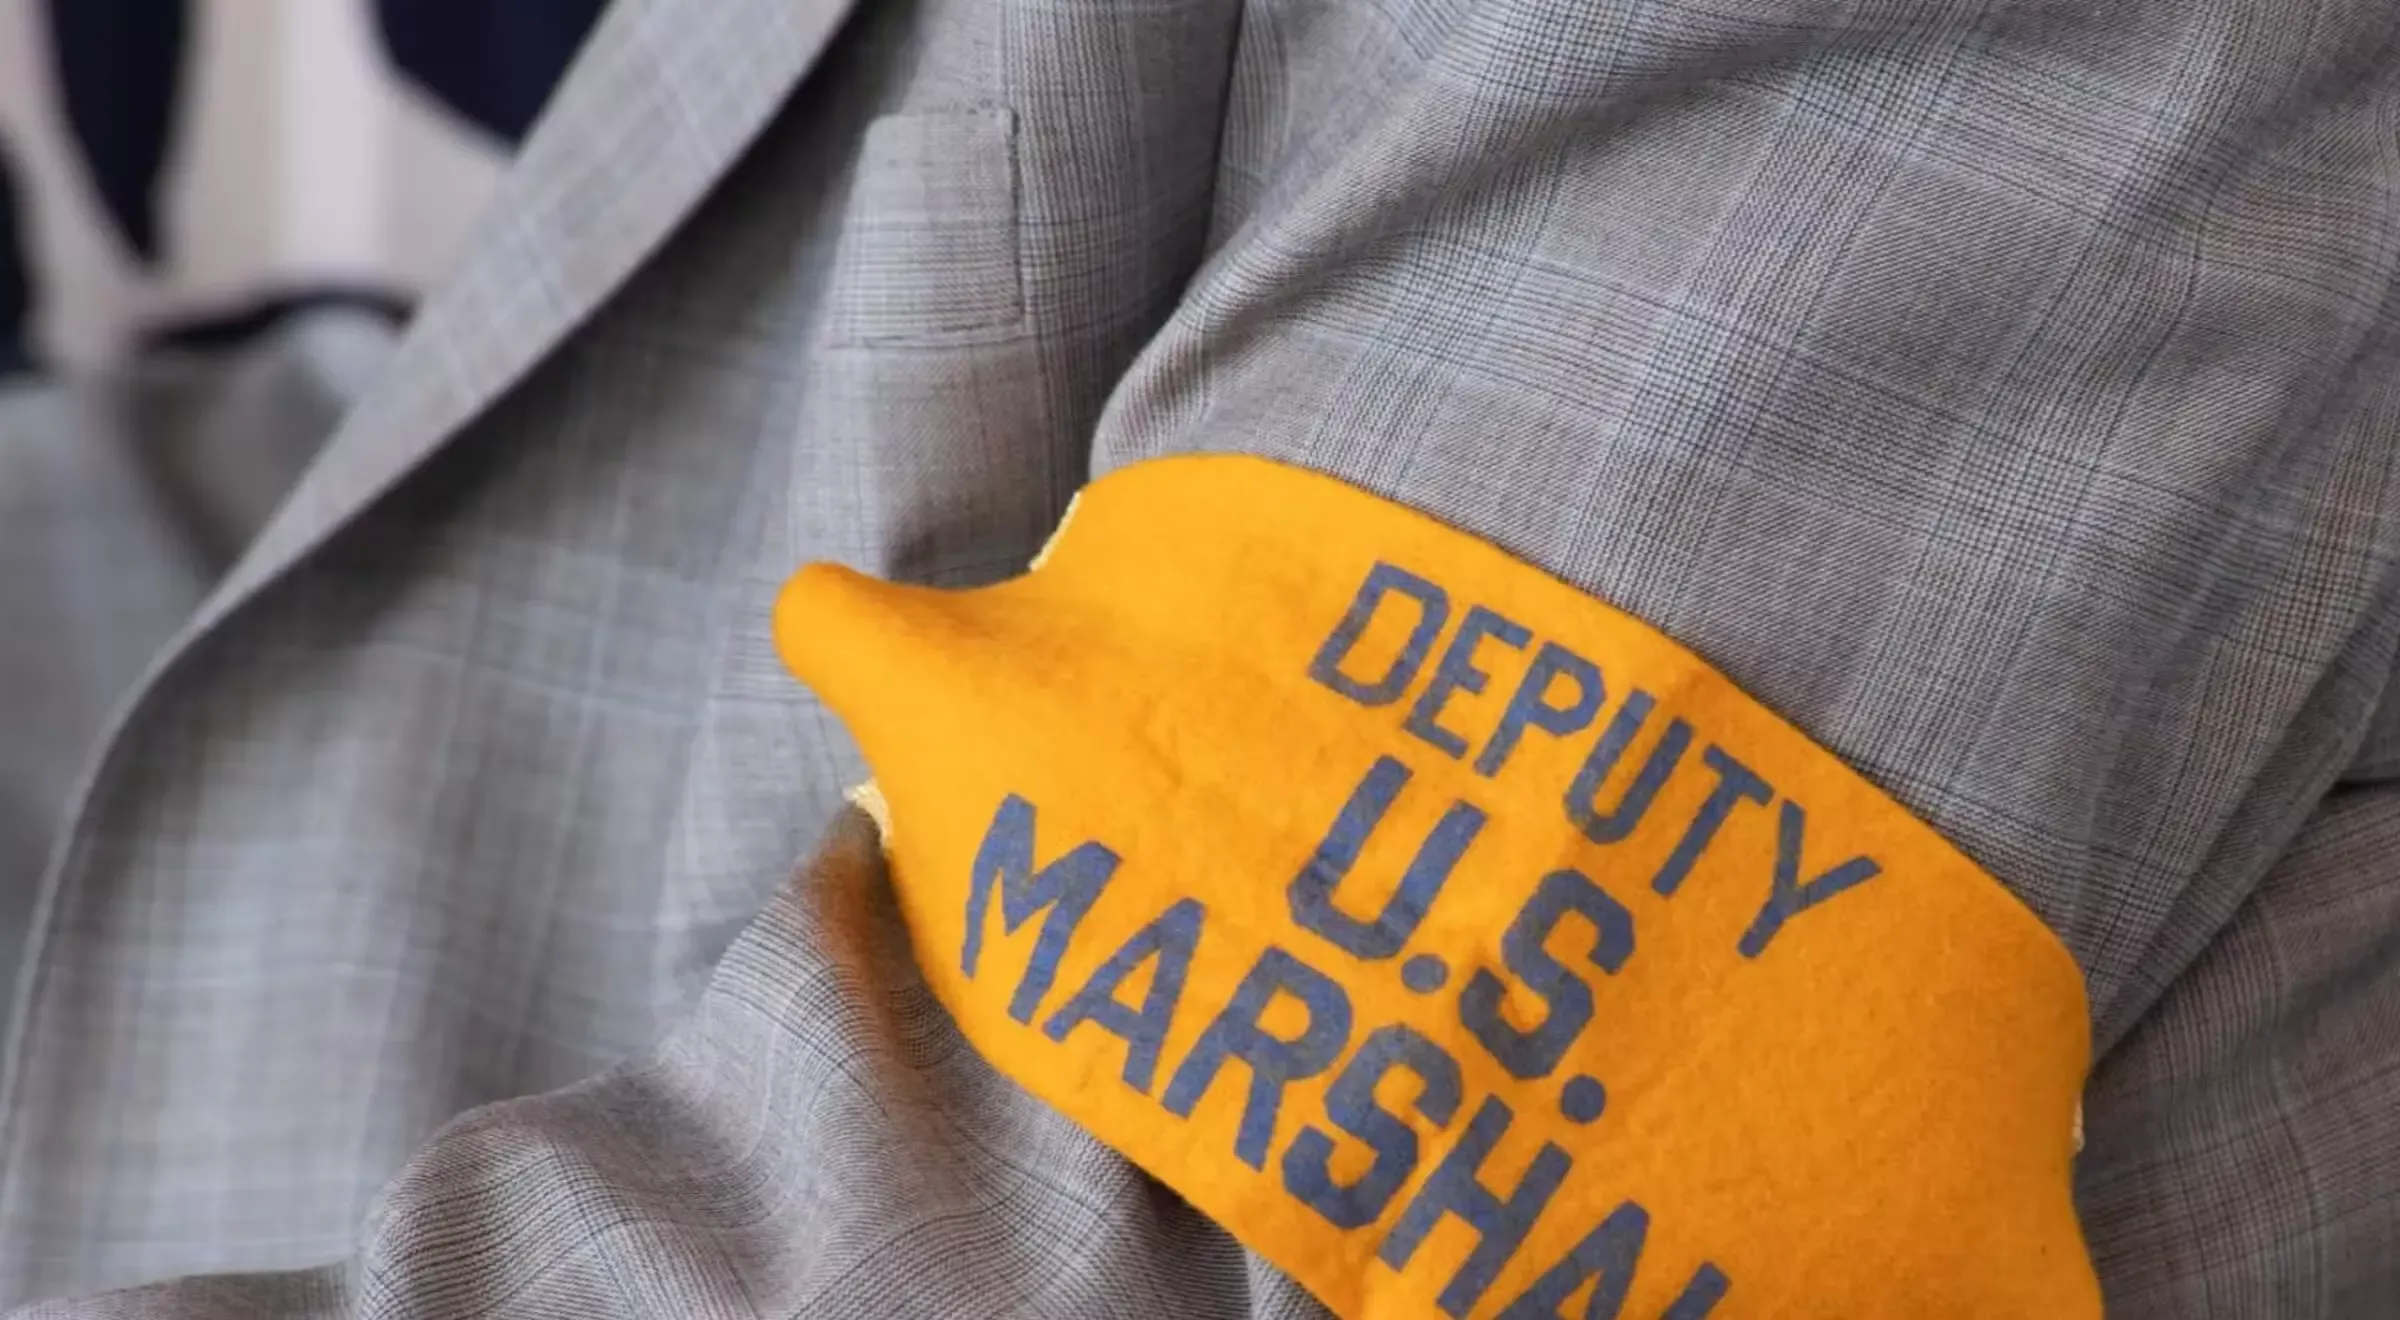 Deputy Marshals Armband